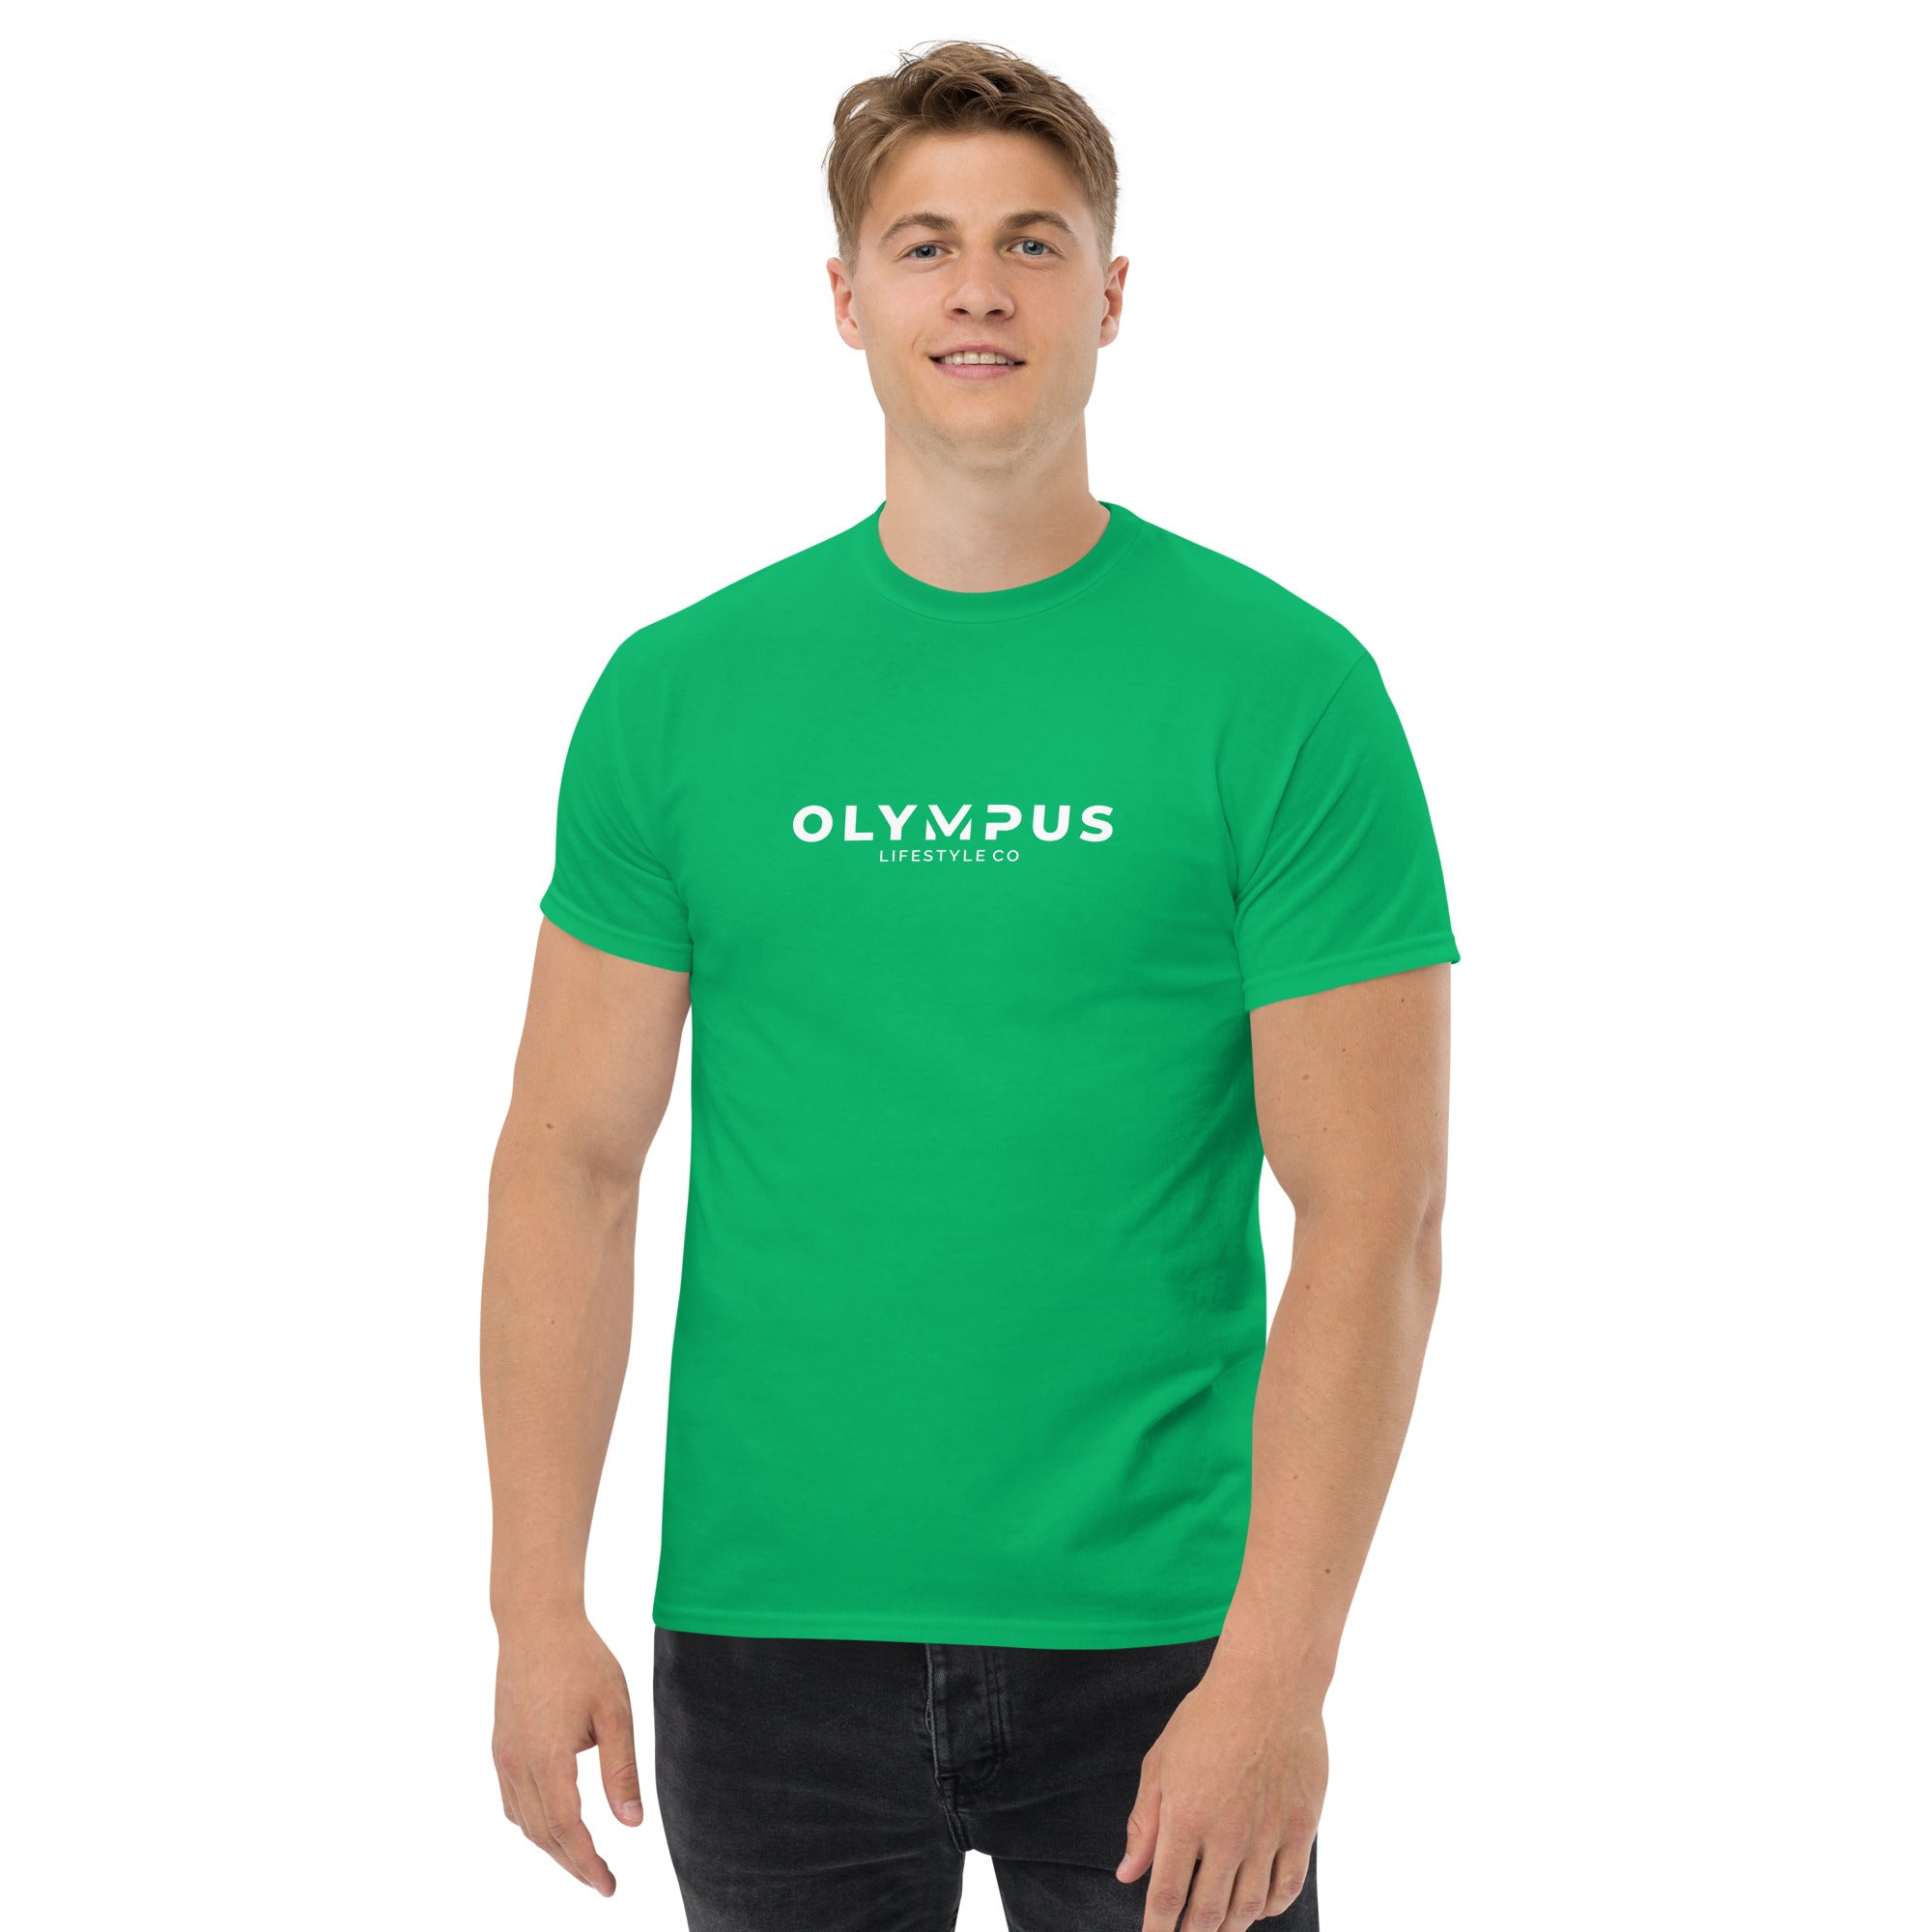 Olympus Men's Printed T-Shirt White Text Logo